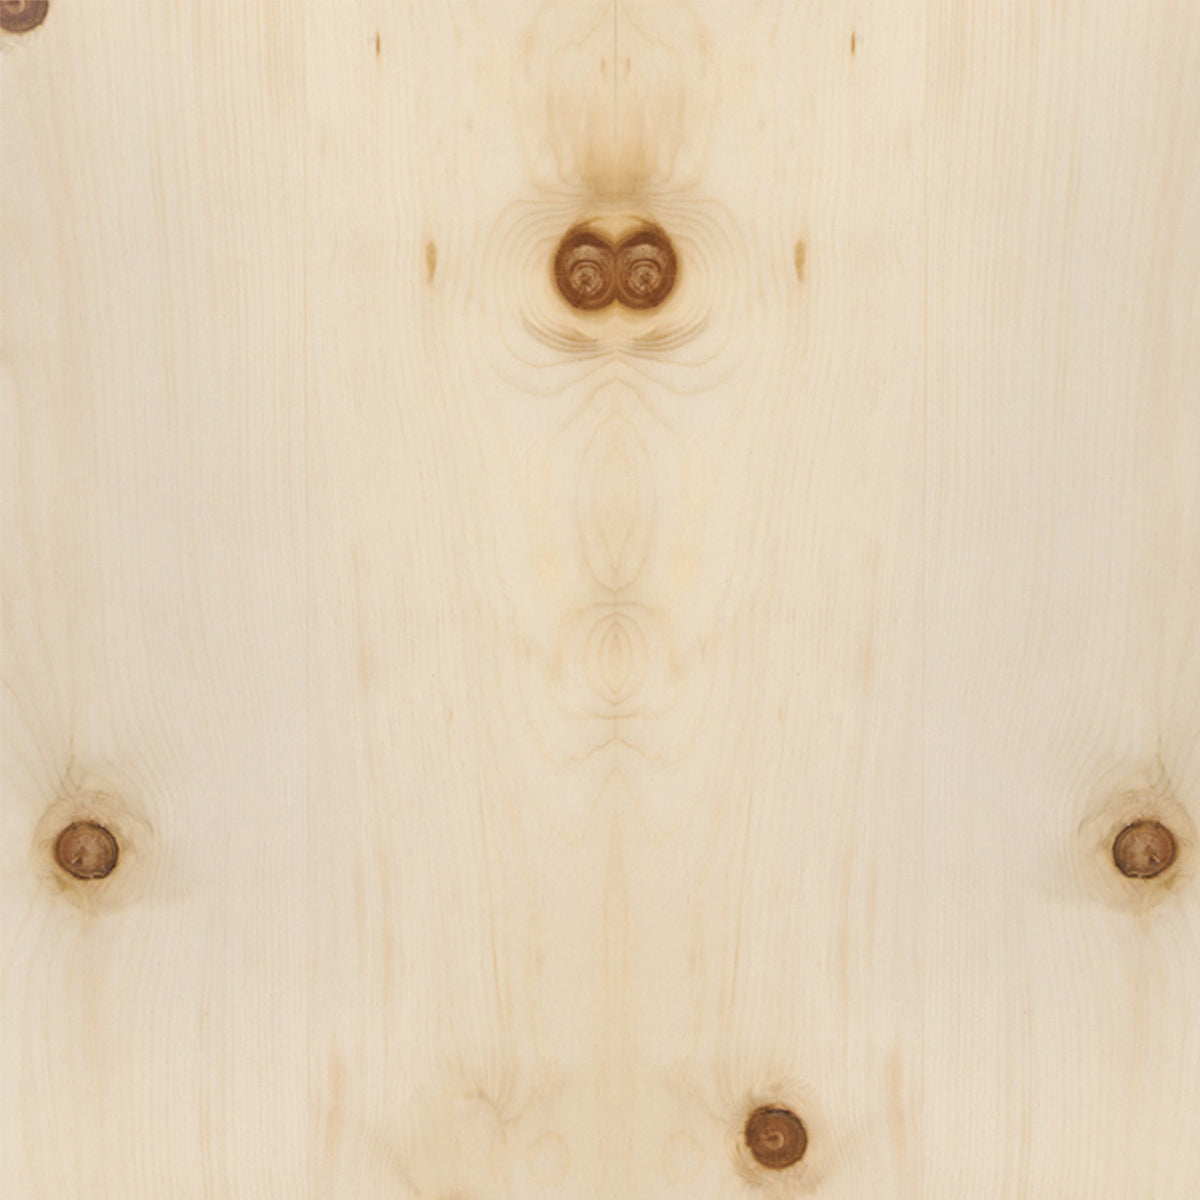 Massivholz Garderobe/Sitzbank 'MyStyle - Large' | L 150 x T 50 x H 45 cm | in verschiedenen Holzarten und Stärken | mit verschiedenen Kleiderstangen aus Nussholz | Made in Austria